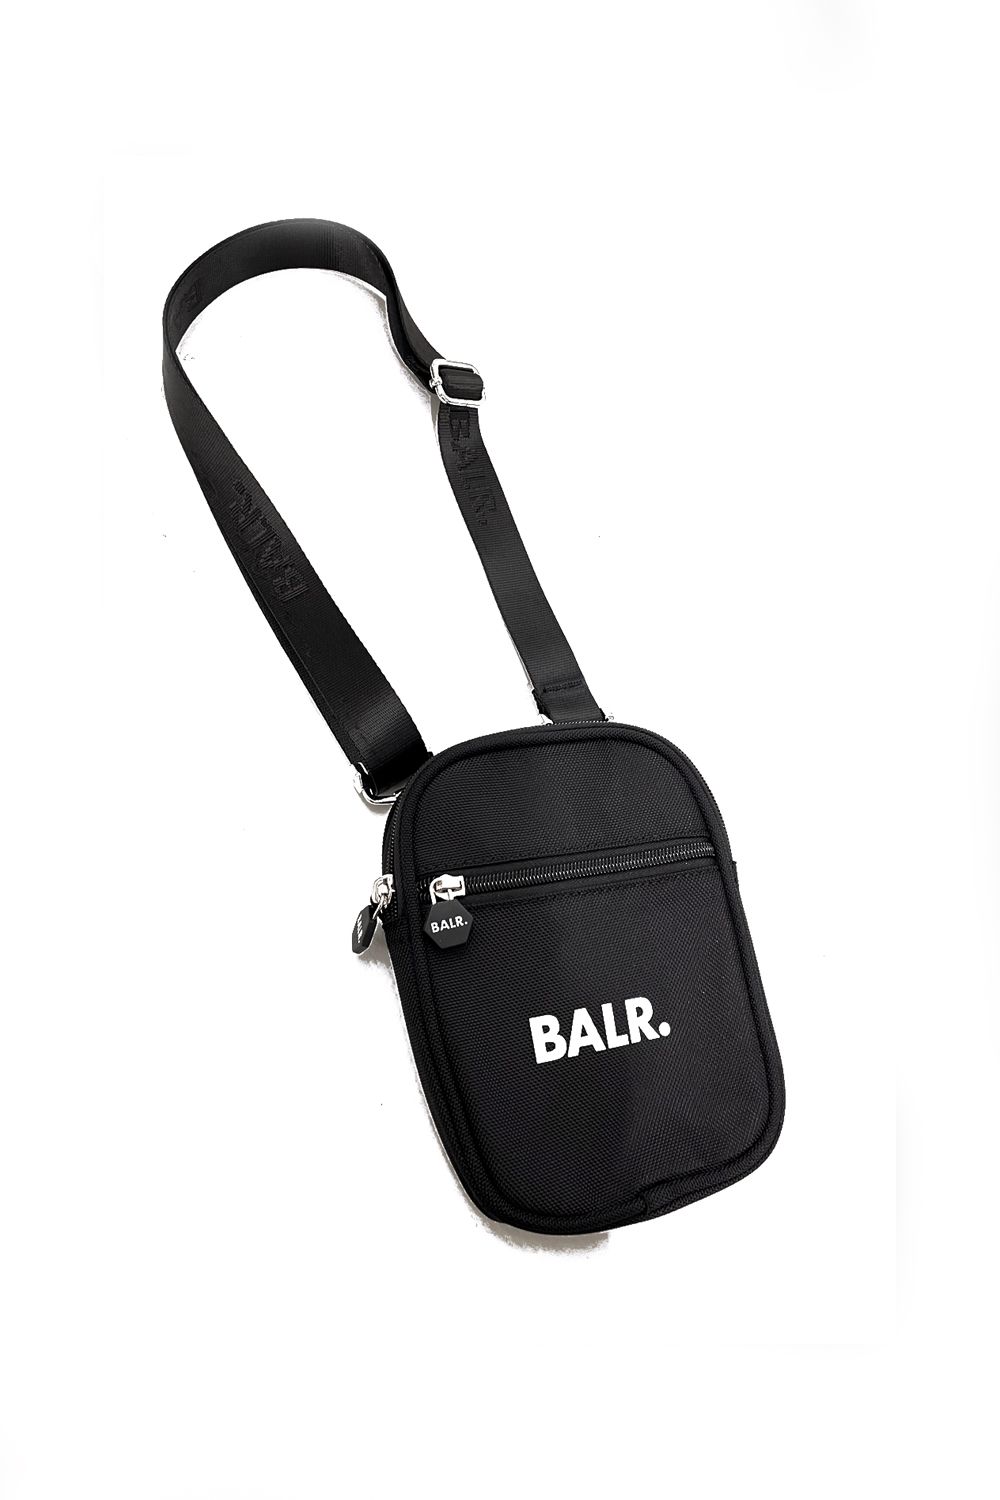 BALR. - U-Series Small Cross Body Bag / ユーシリーズ スモール 